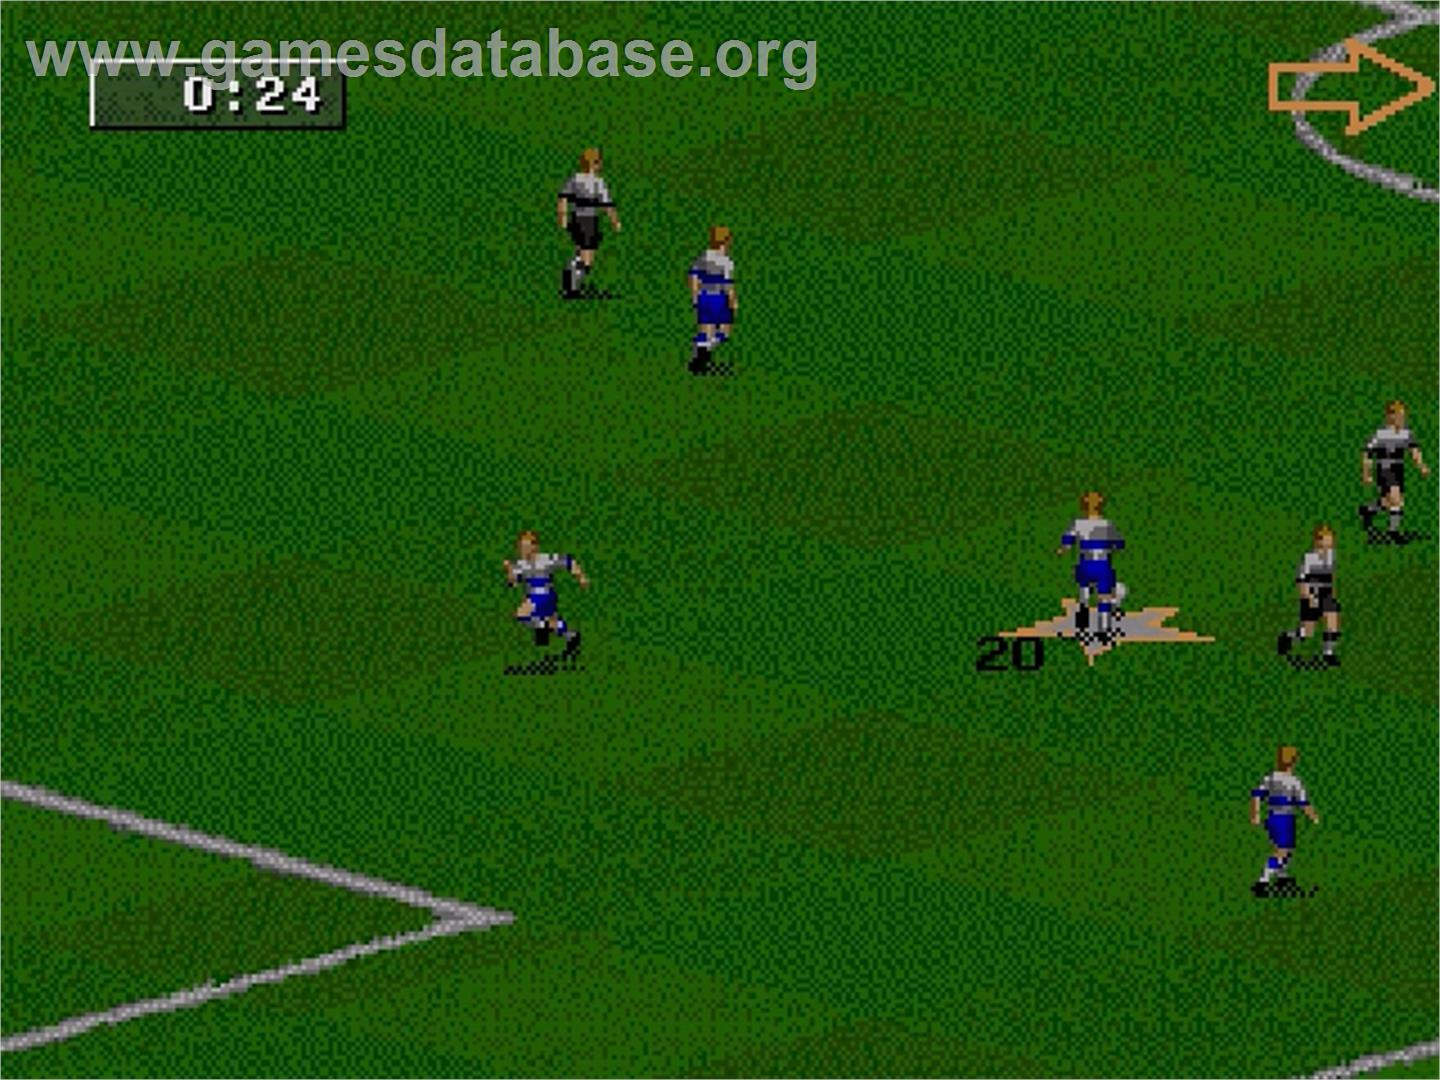 FIFA 98: Road to World Cup - Sega Genesis - Artwork - In Game